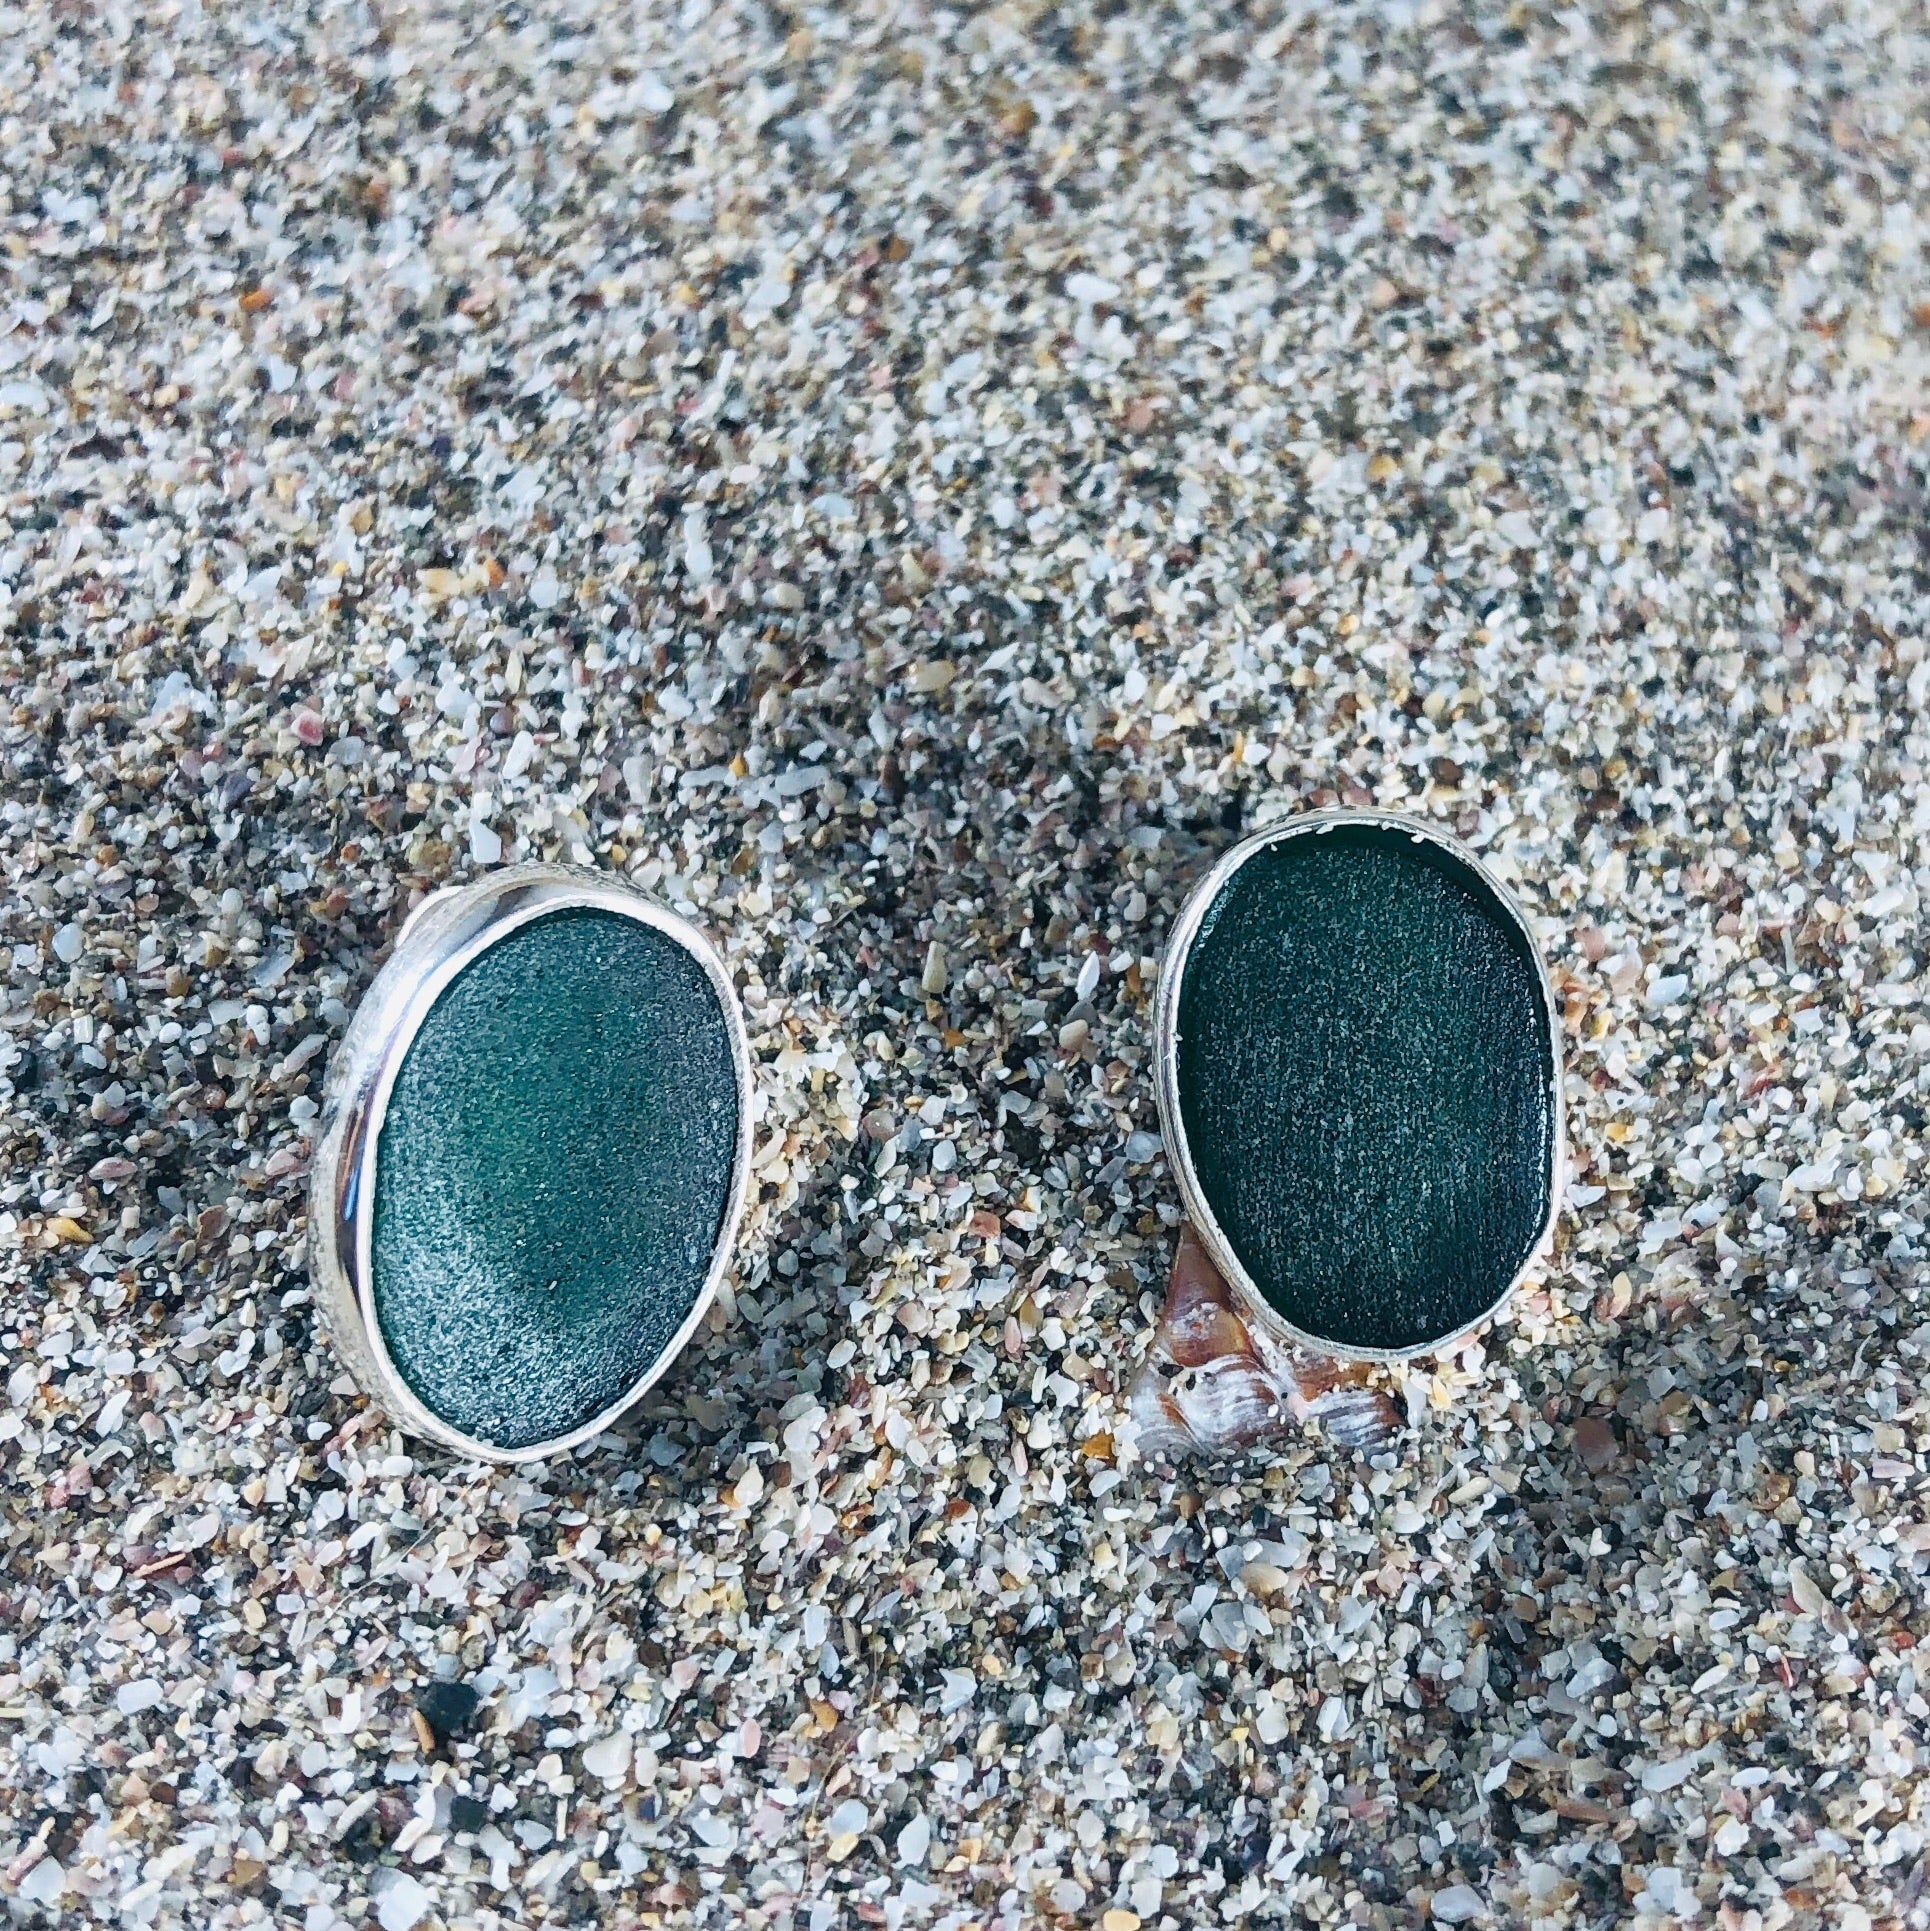 Cobalt Blue Sea Glass Oval Post Earrings-Jenstones Jewelry